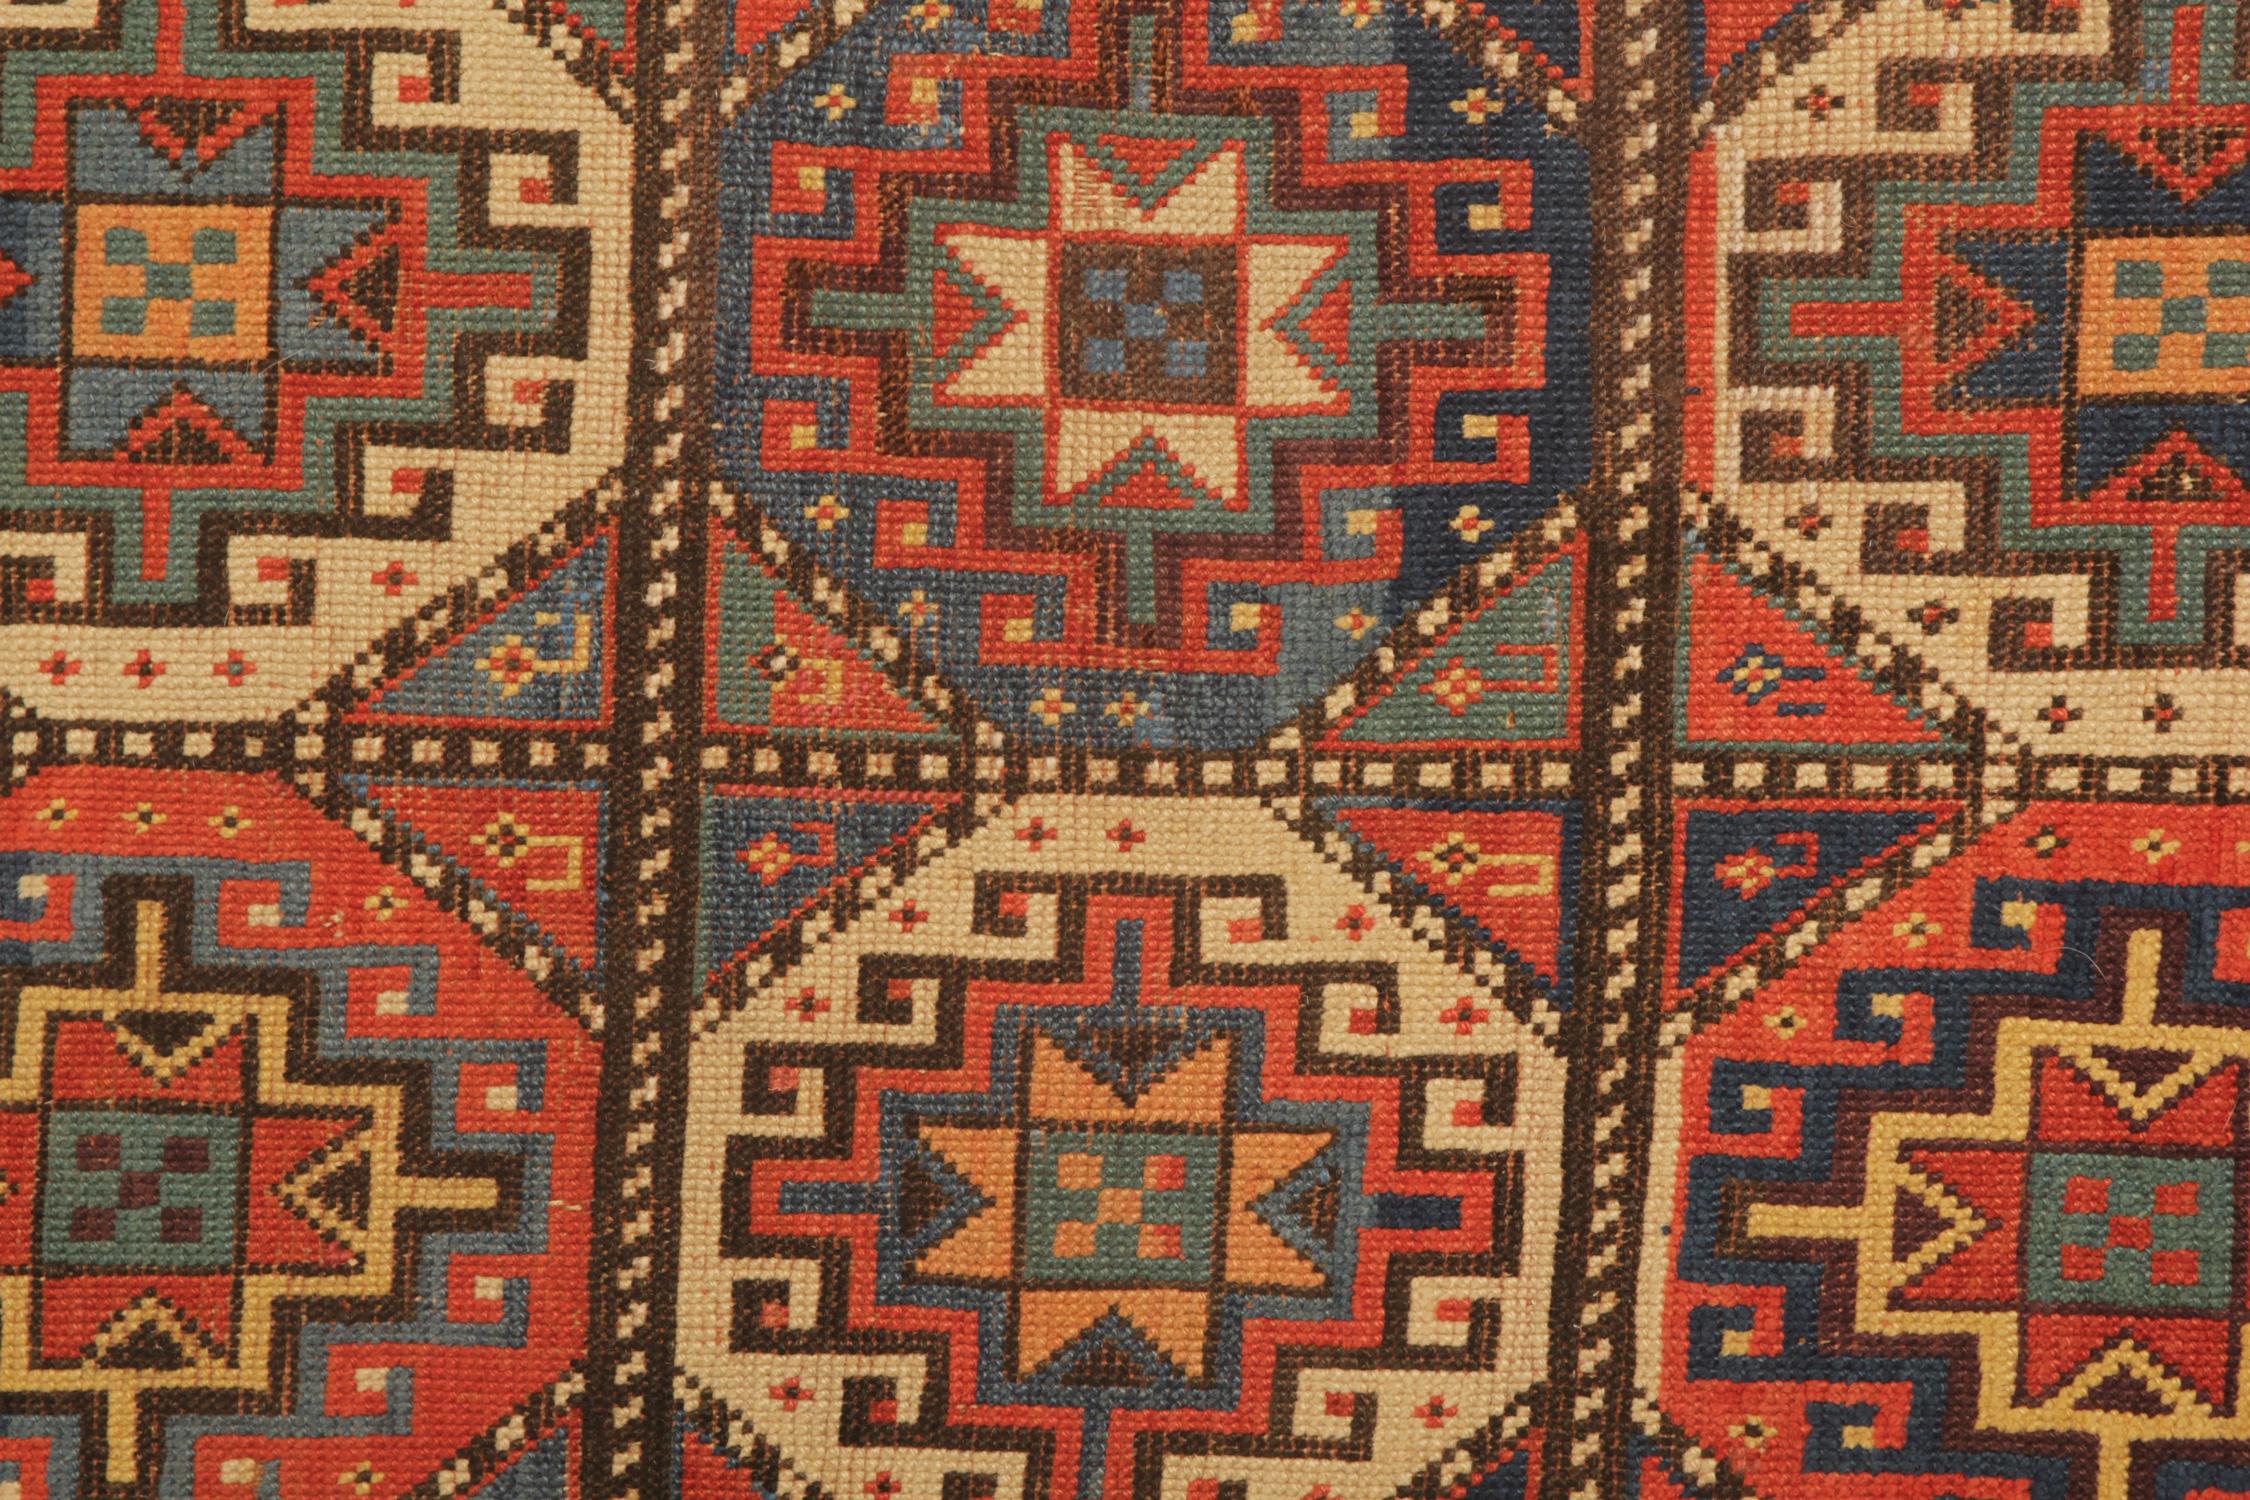 Ein hervorragendes Beispiel für kaukasische Teppichweberei aus der kasachischen Region Aserbaidschans. Obwohl diese orange-roten Grund all-over gemusterten Teppiche kann wie aus der Ferne, aber diese gewebten Teppich hat eine große Auswahl an